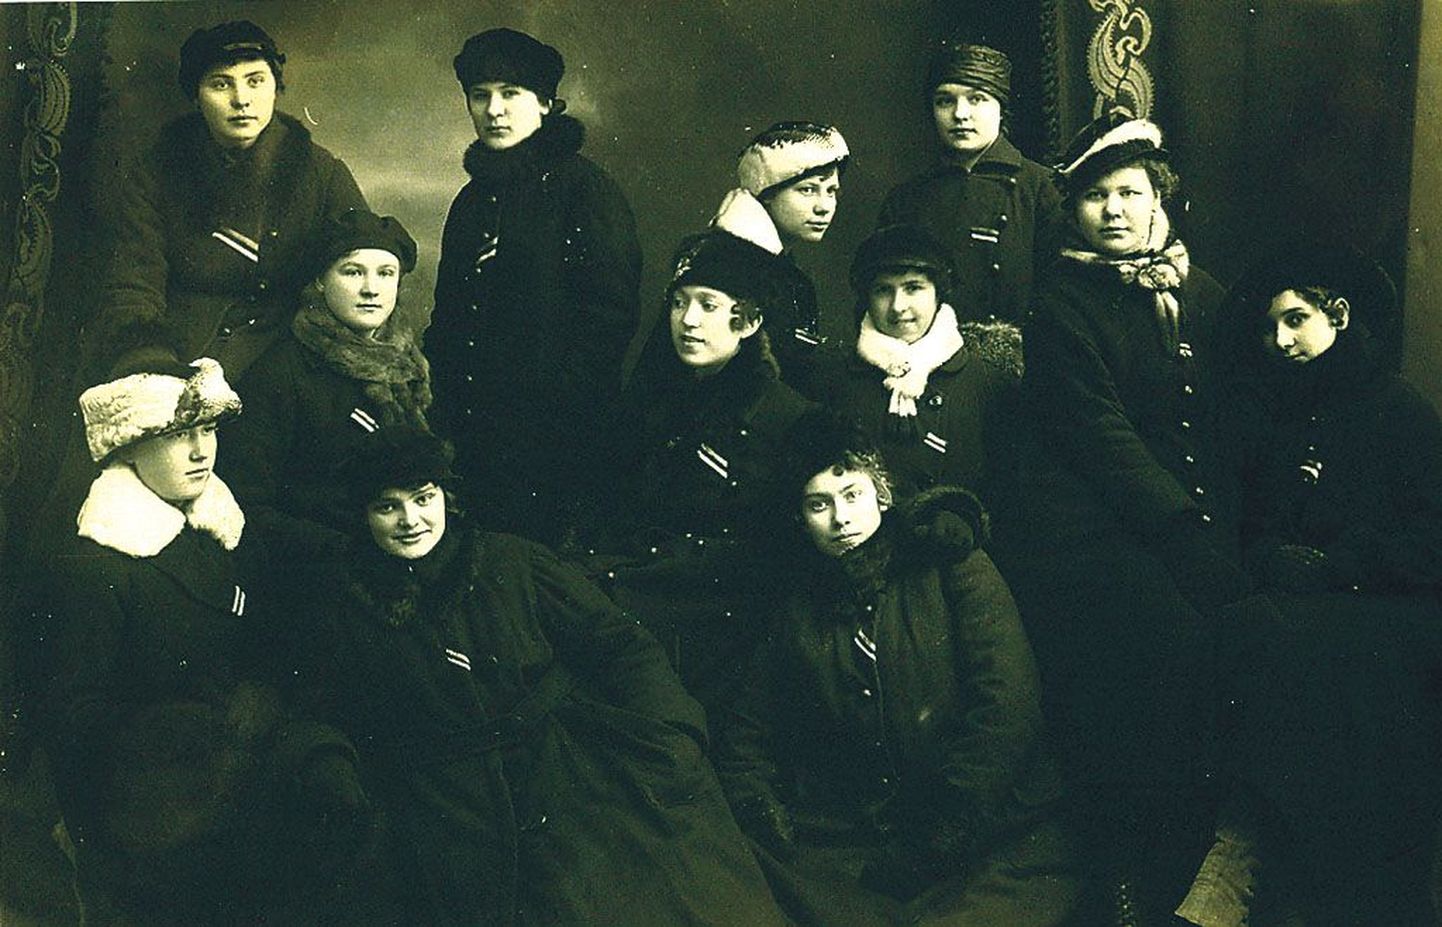 1918. aasta 23. veebruaril kanti Pärnus sinimustvalgeid linte, mida jagasid Pärnu tütarlaste gümnaasiumi õpilased. Pärnu muuseum kutsub üles linte kandma igal aastal 23. veebruaril. Täna õhtul võib lindi omanikuks saada vastse muuseumihoone poest Aida tänaval.